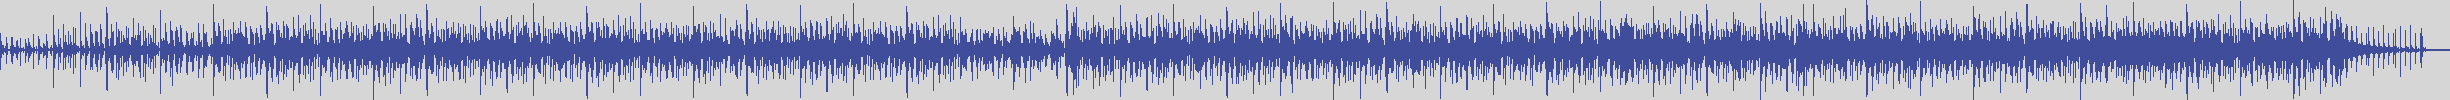 noclouds_chillout [NOC065] Jazz Bar - Indelette [Original Mix] audio wave form